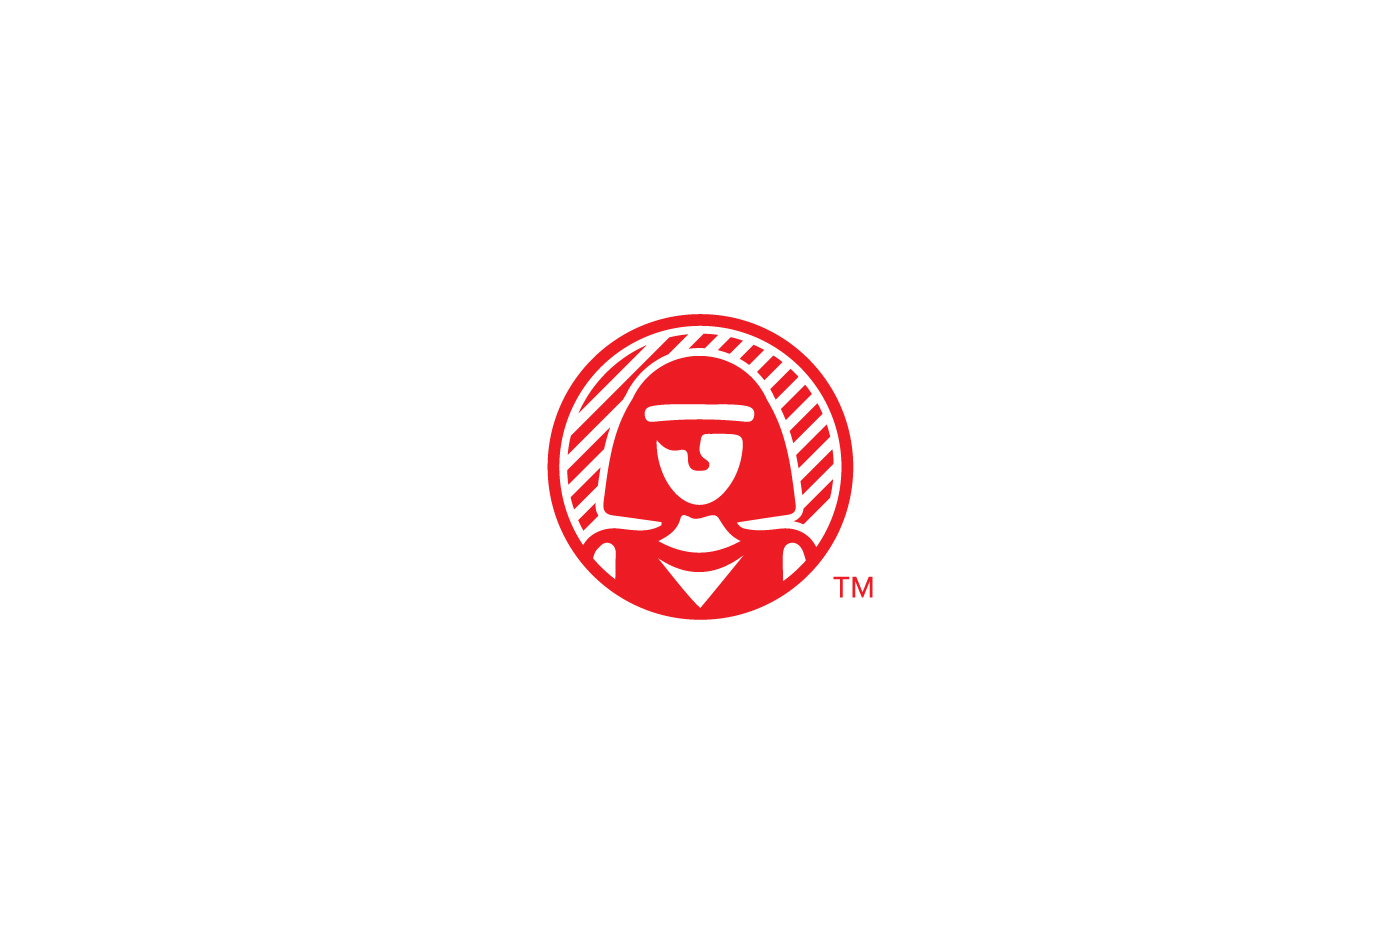 brand designer visual identity company identity Corporate Identity Stationery graphic identity symbol logo brand identity monogram